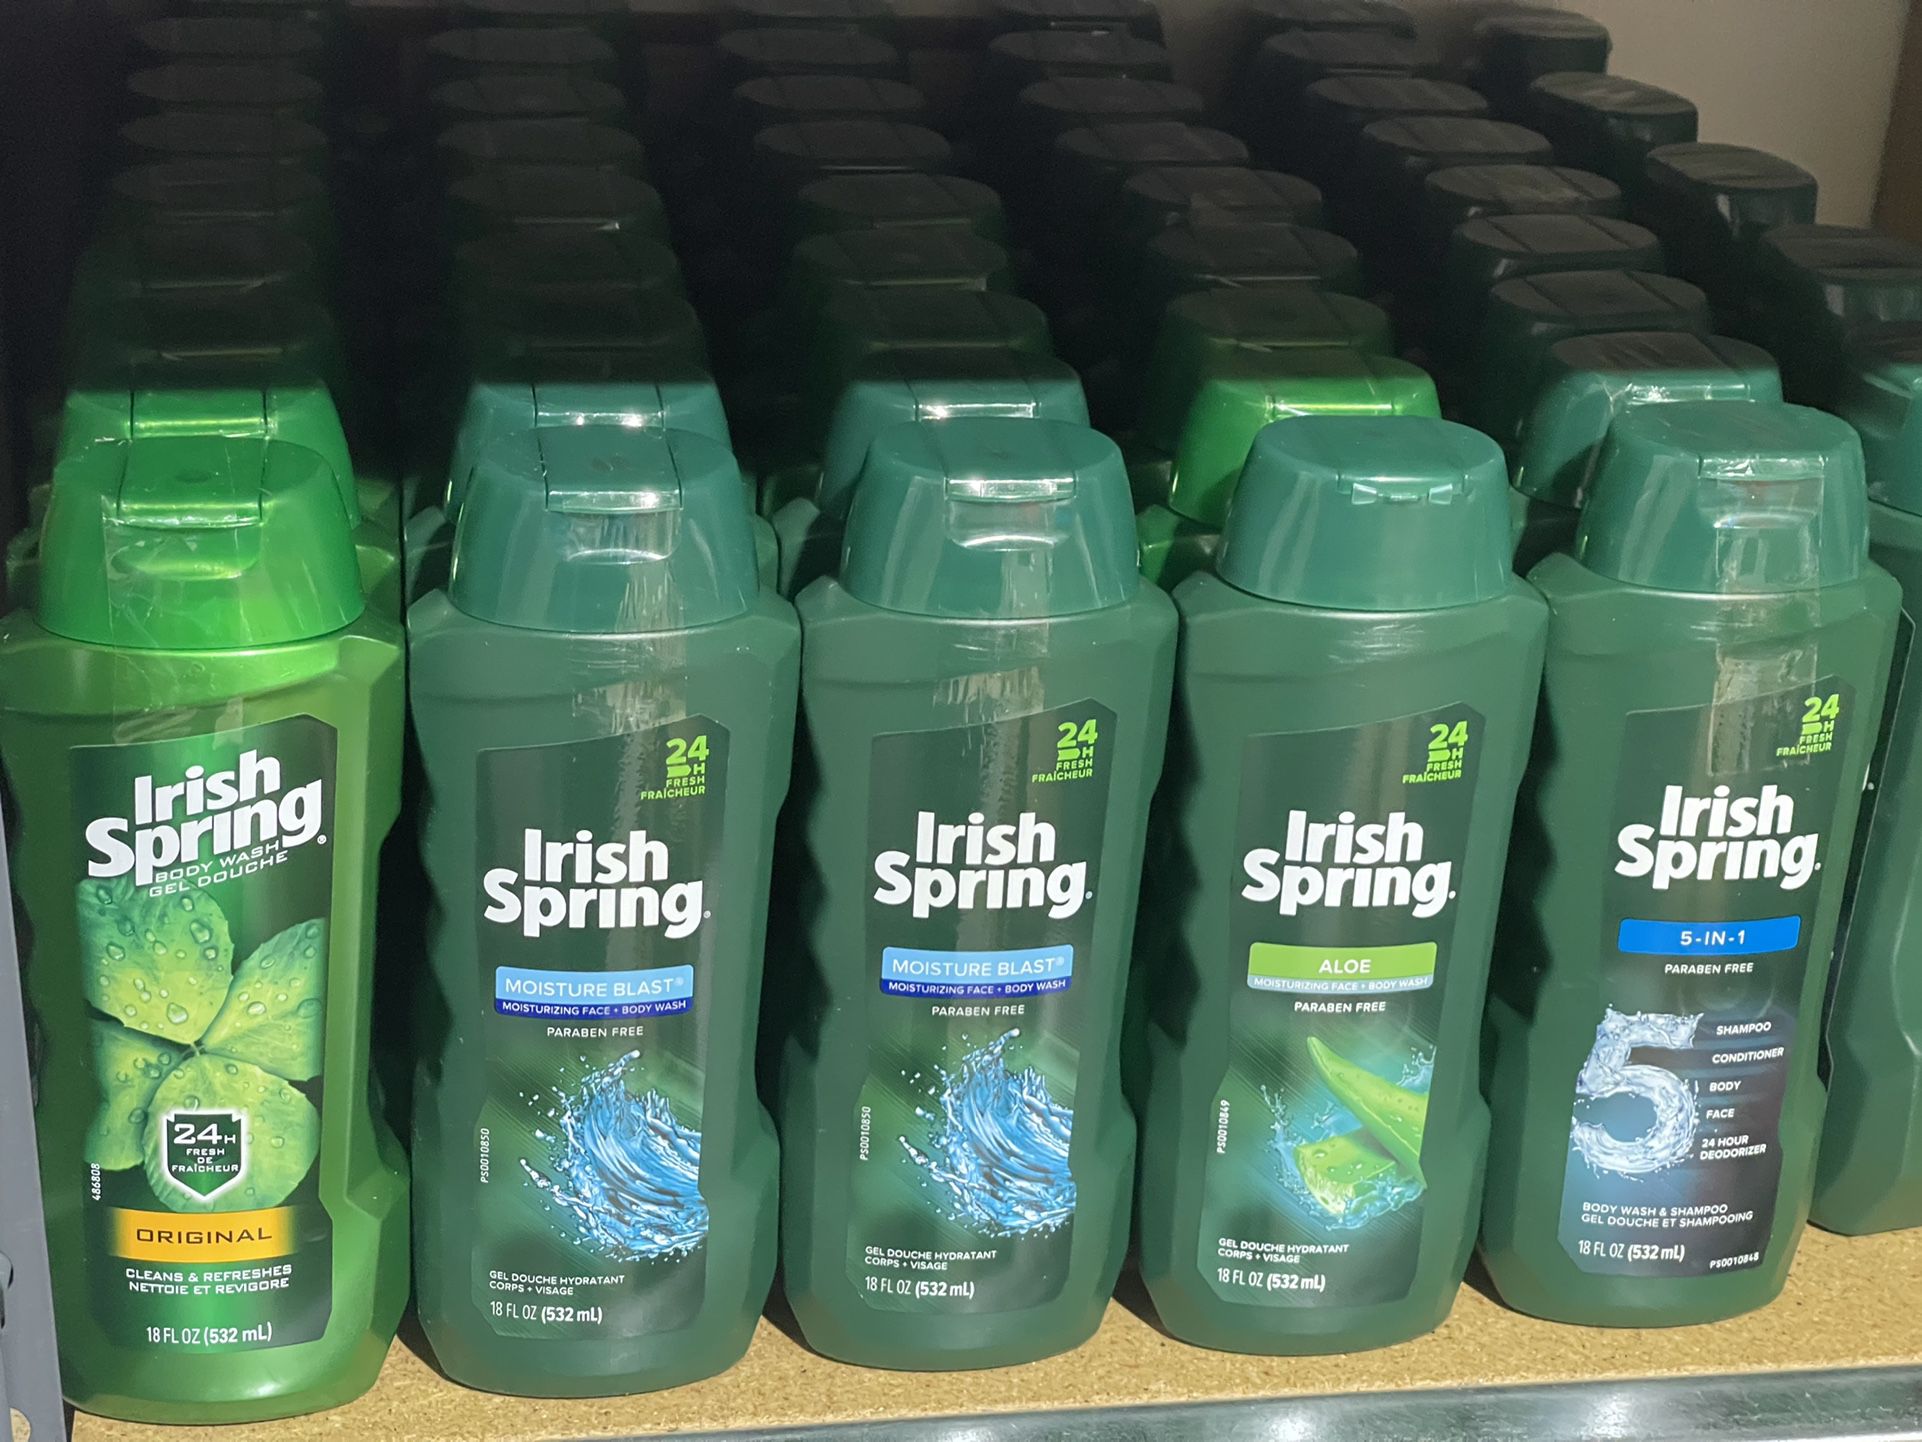 Irish Spring Body Wash 2/$5